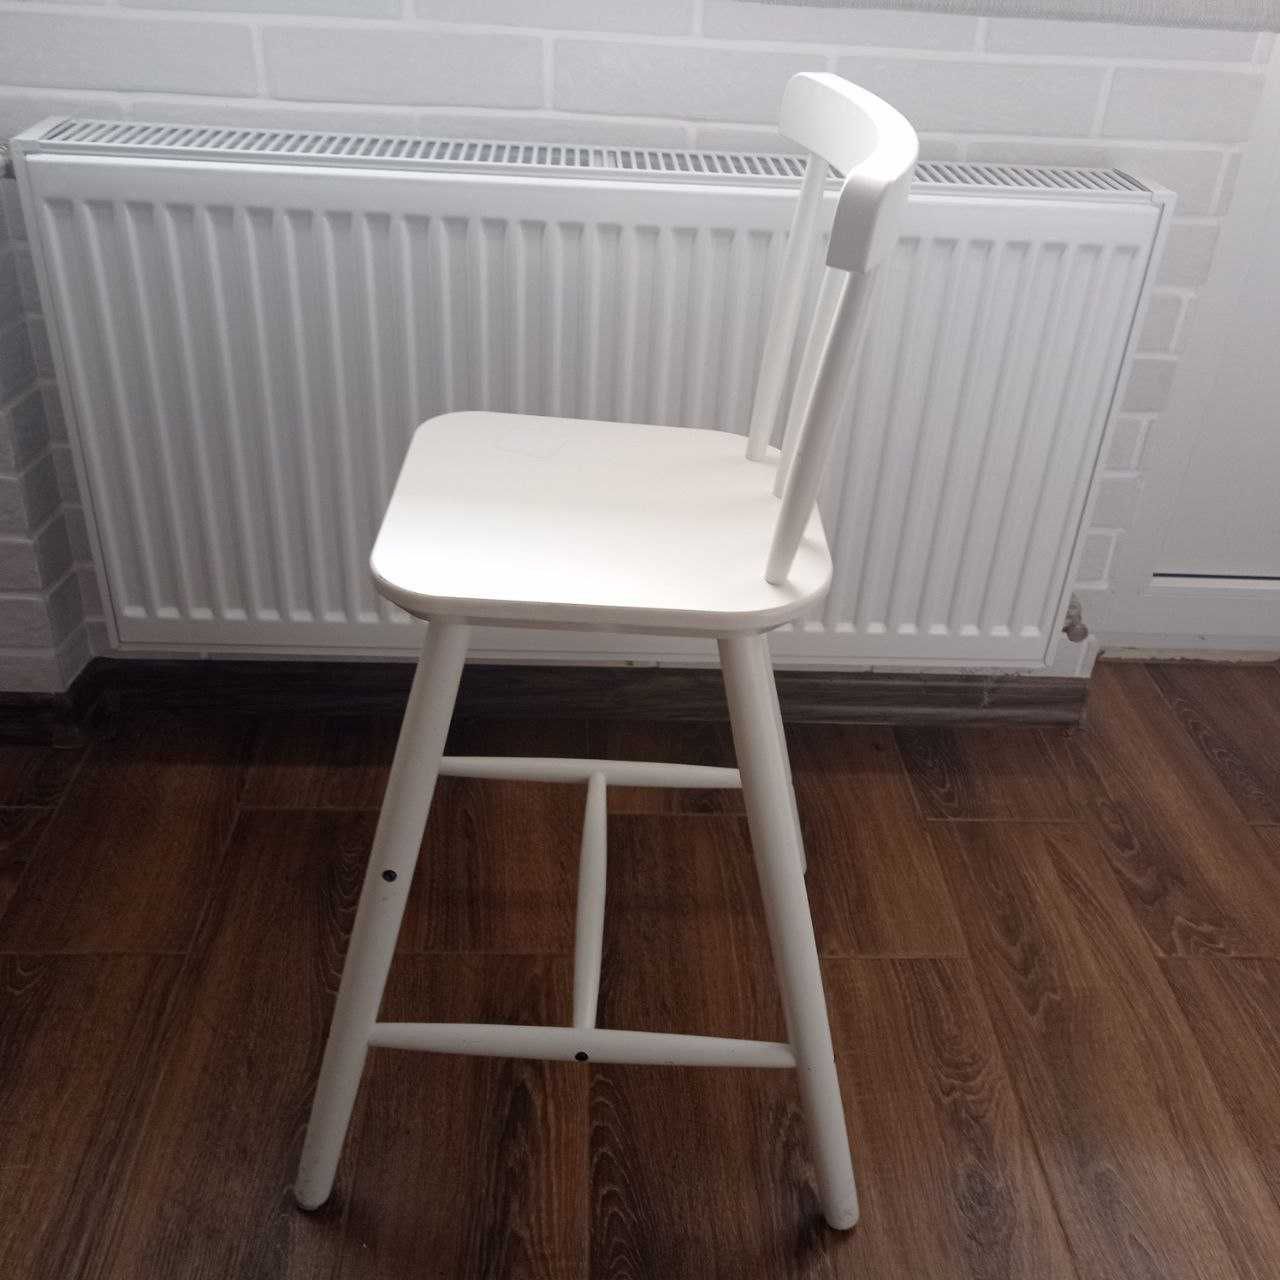 Дитячий високий стілець AGAM IKEA білий дерев'яний